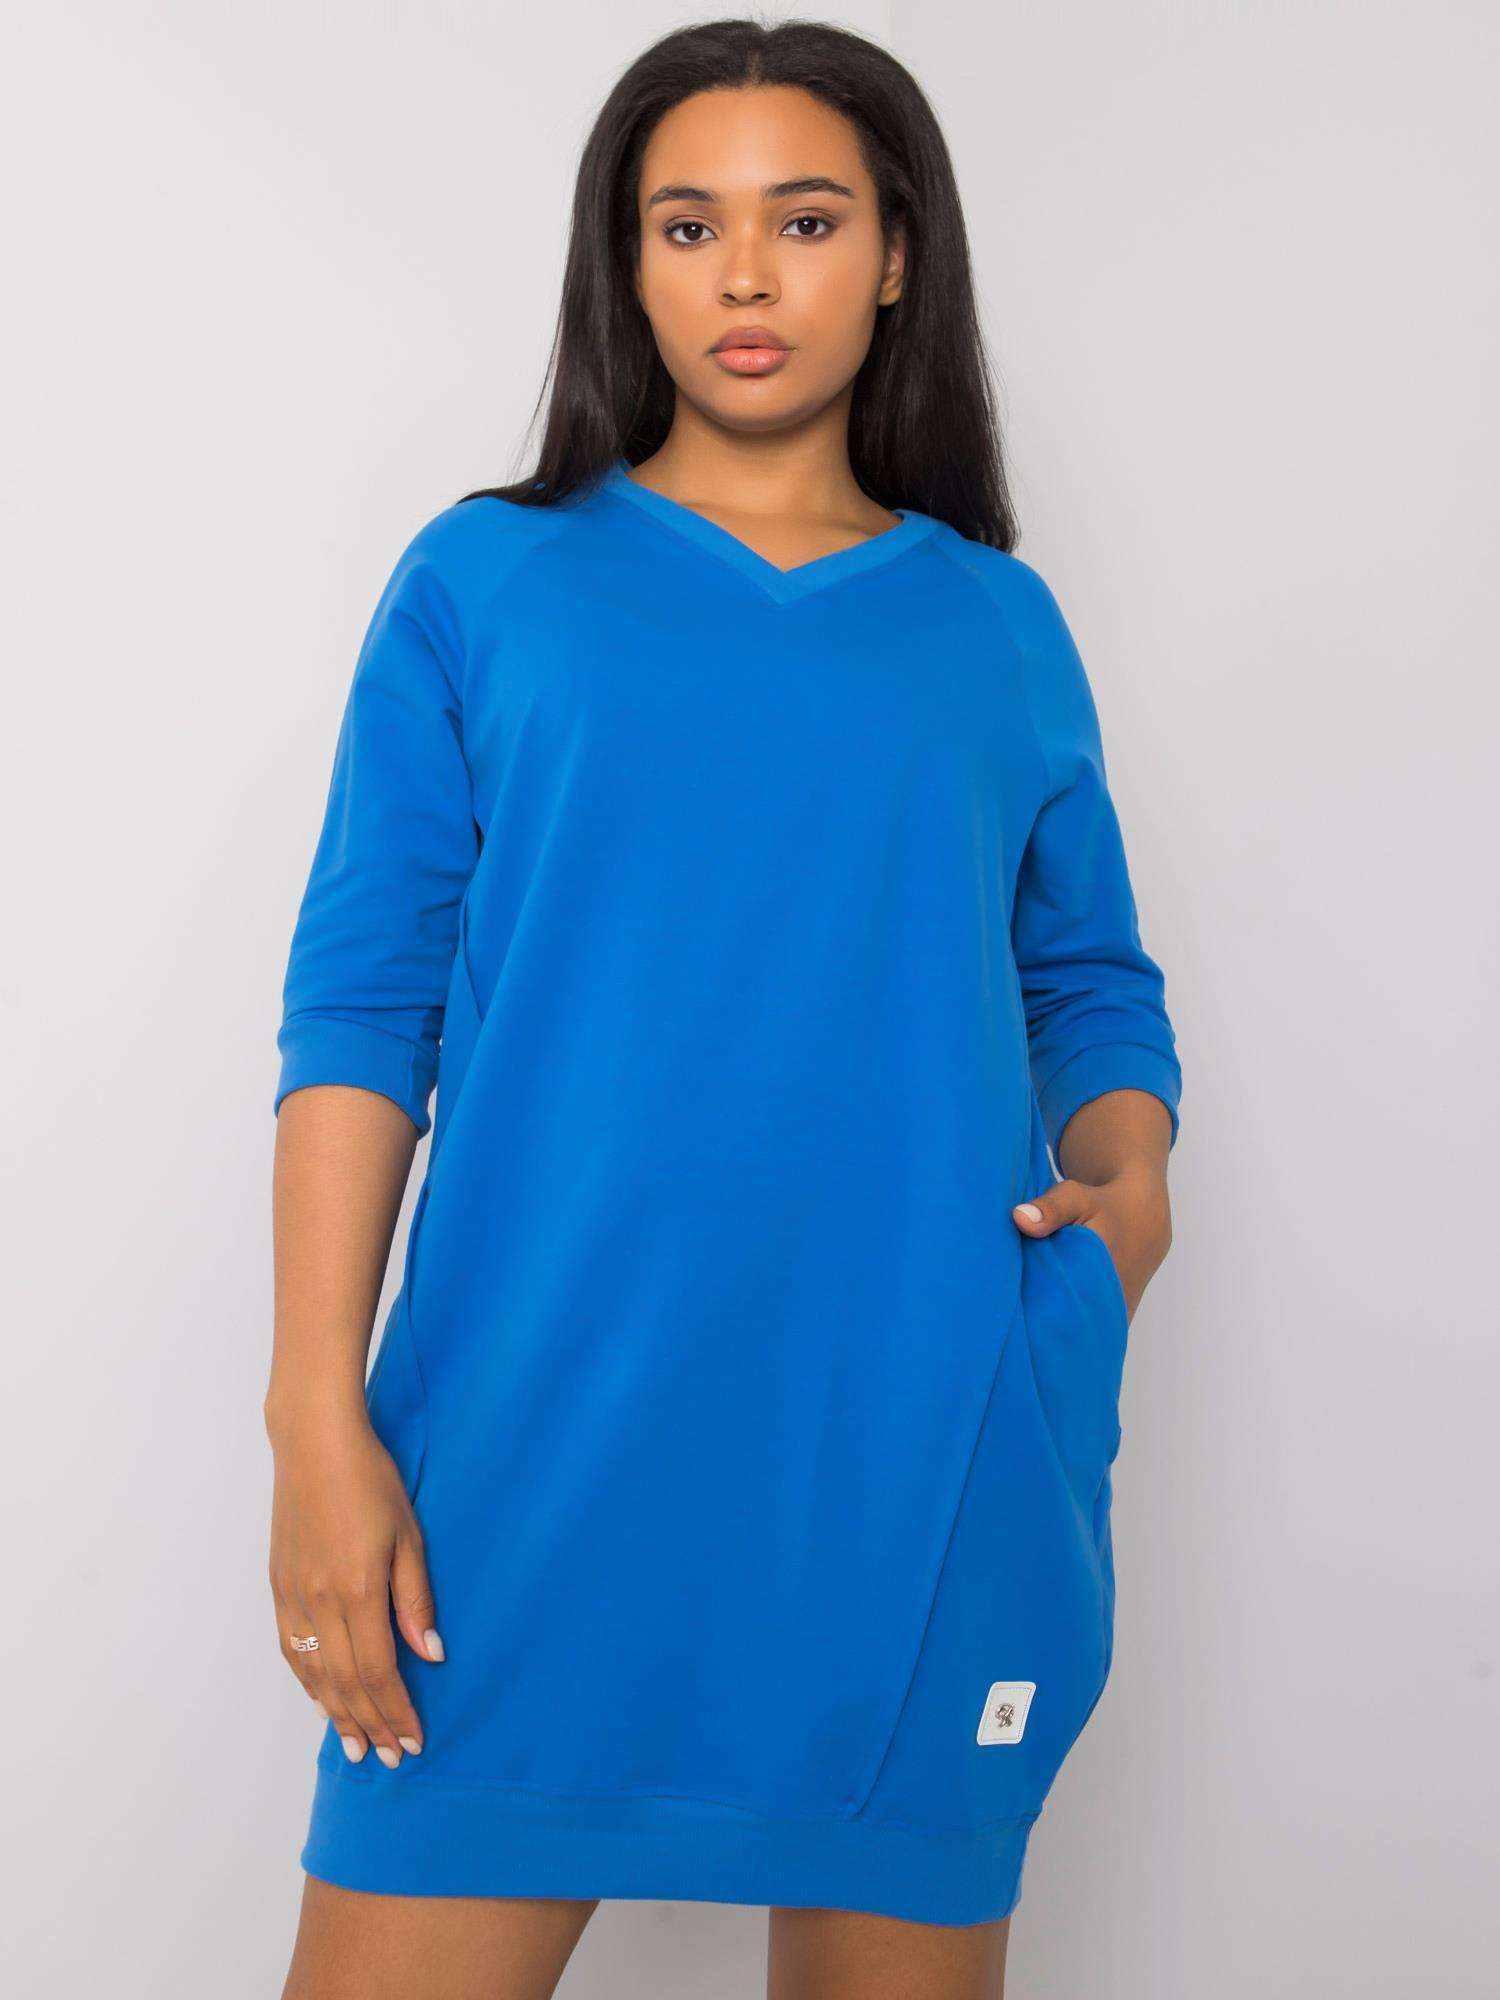 Tmavě modré plus size šaty s kapsami jedna velikost